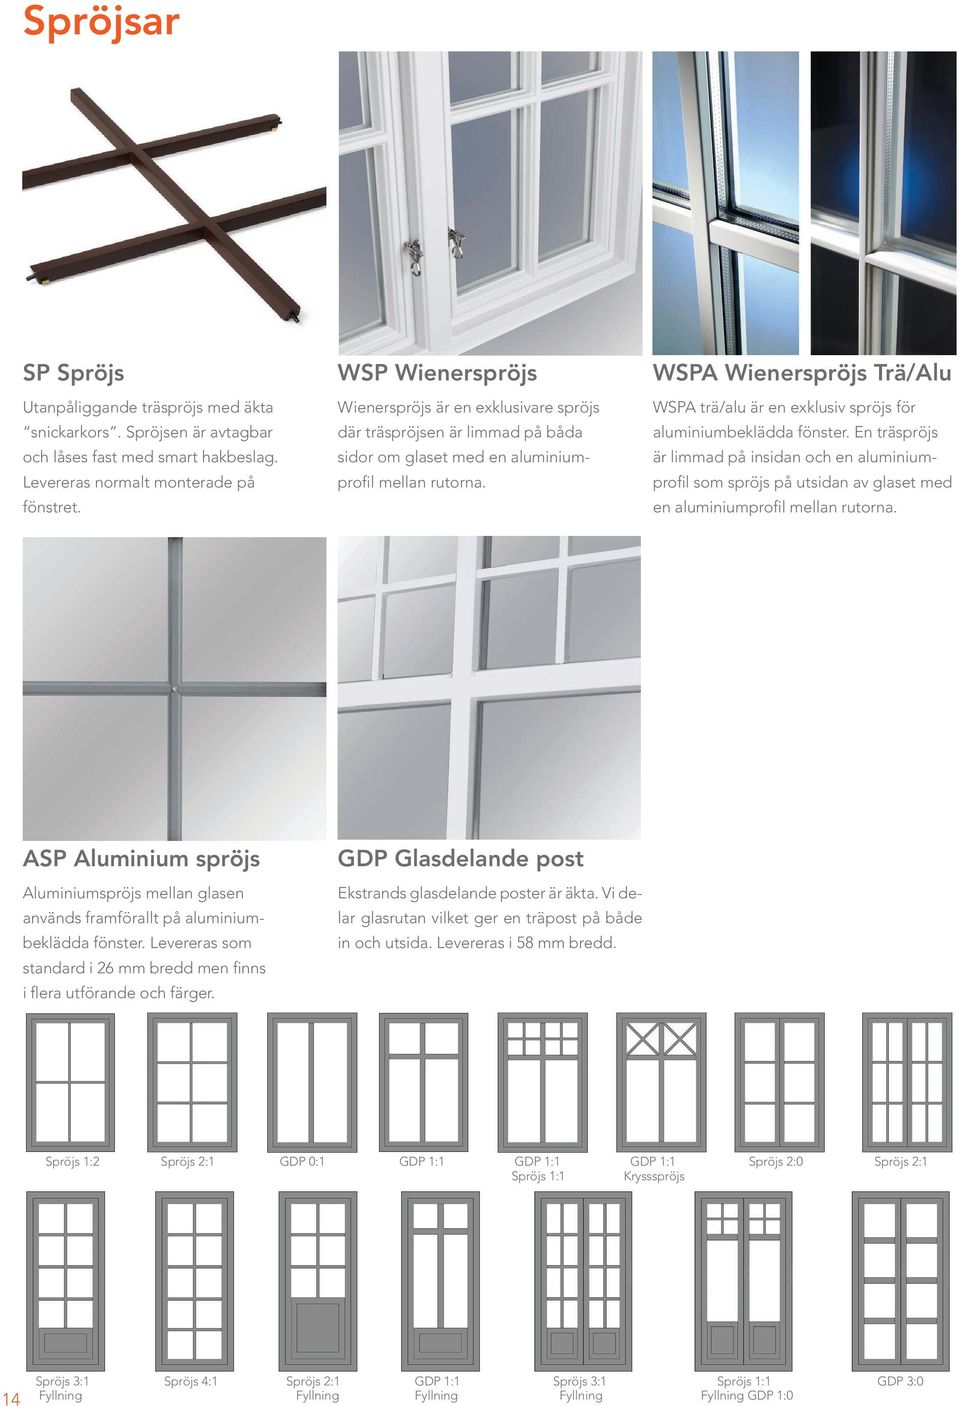 WSPA Wienerspröjs Trä/Alu WSPA trä/alu är en exklusiv spröjs för aluminiumbeklädda fönster.